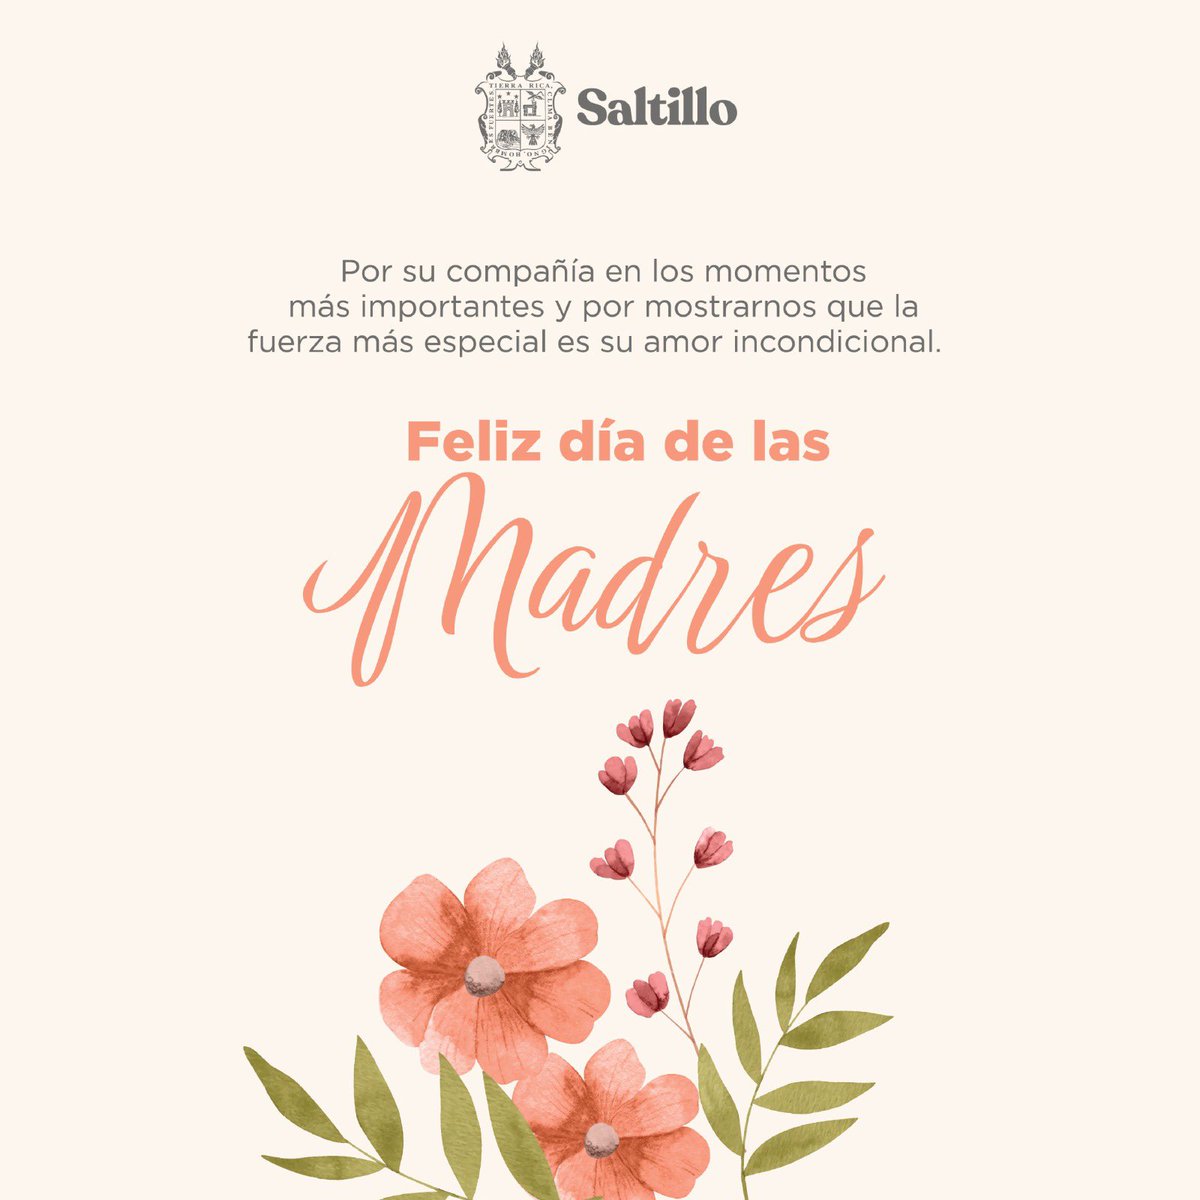 En este Día de las Madres, queremos felicitar con cariño a todas las mamás y reconocer su invaluable labor en la sociedad, son ustedes un pilar en las familias saltillenses. ¡Muchas felicidades! #Saltillo